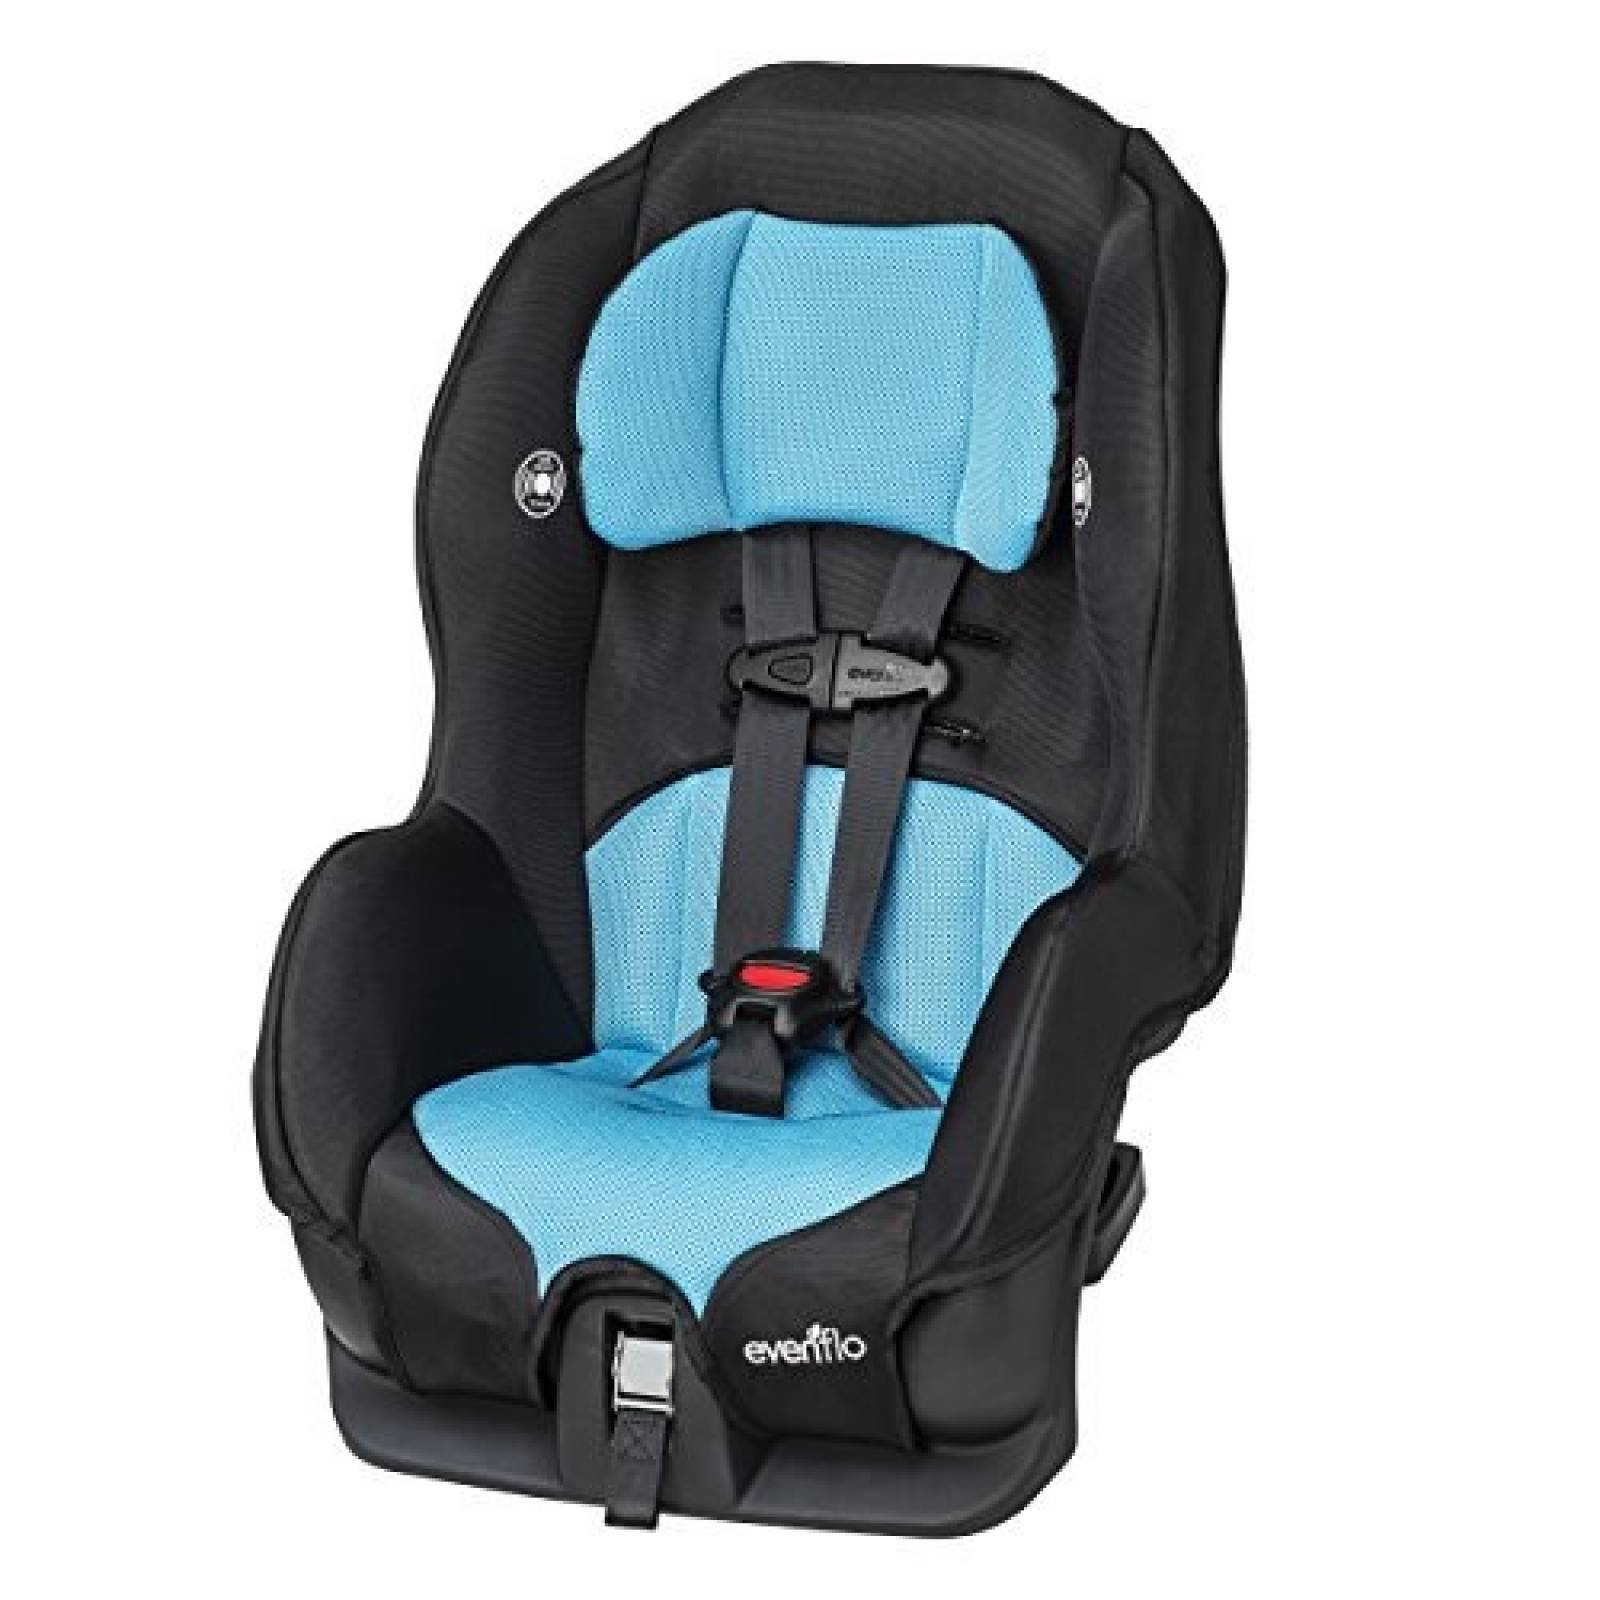 Asiento convertible de coche Evenflo para niños -Azul